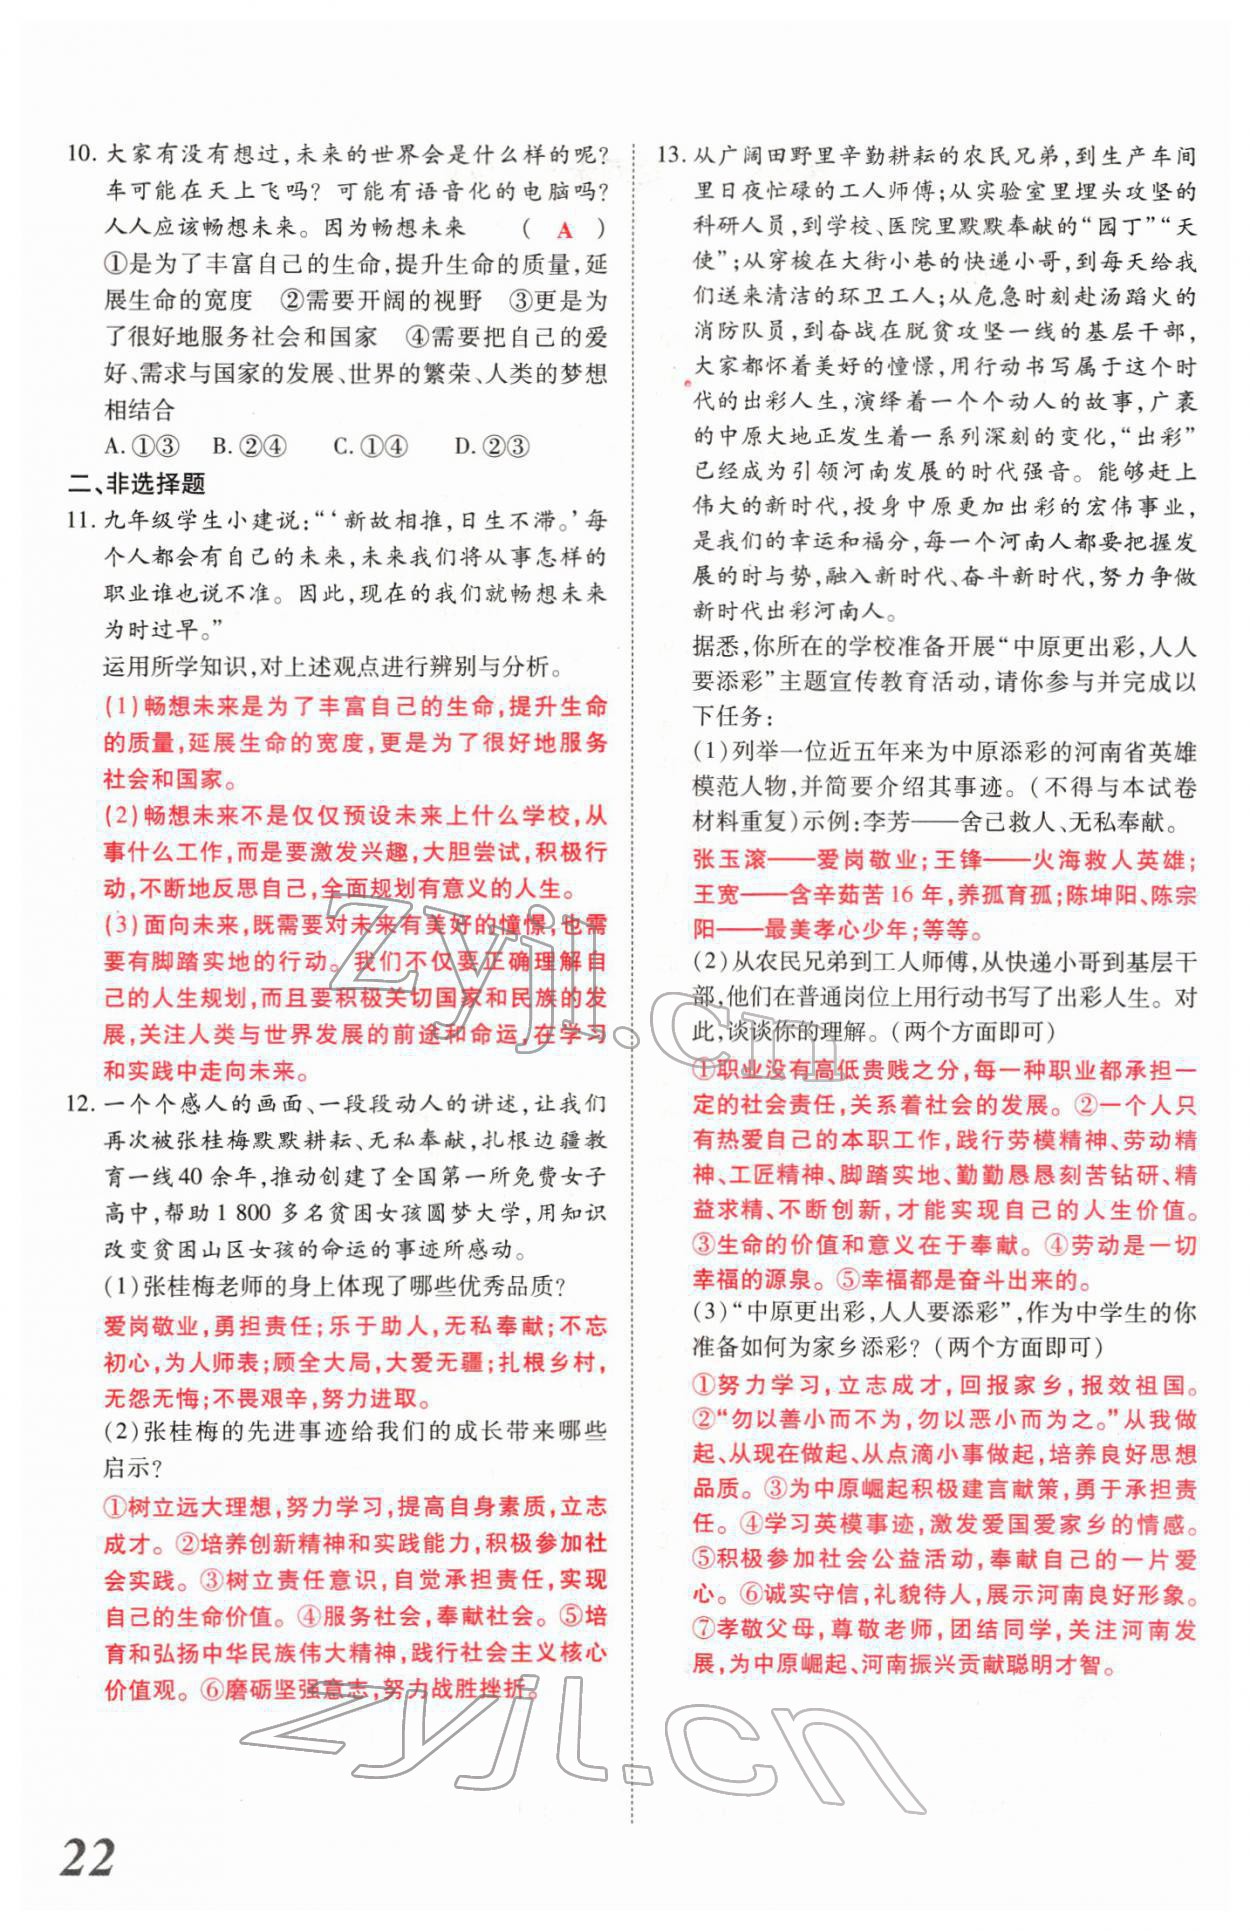 2022年新思路河南中考道德与法治郑州大学出版社 第22页